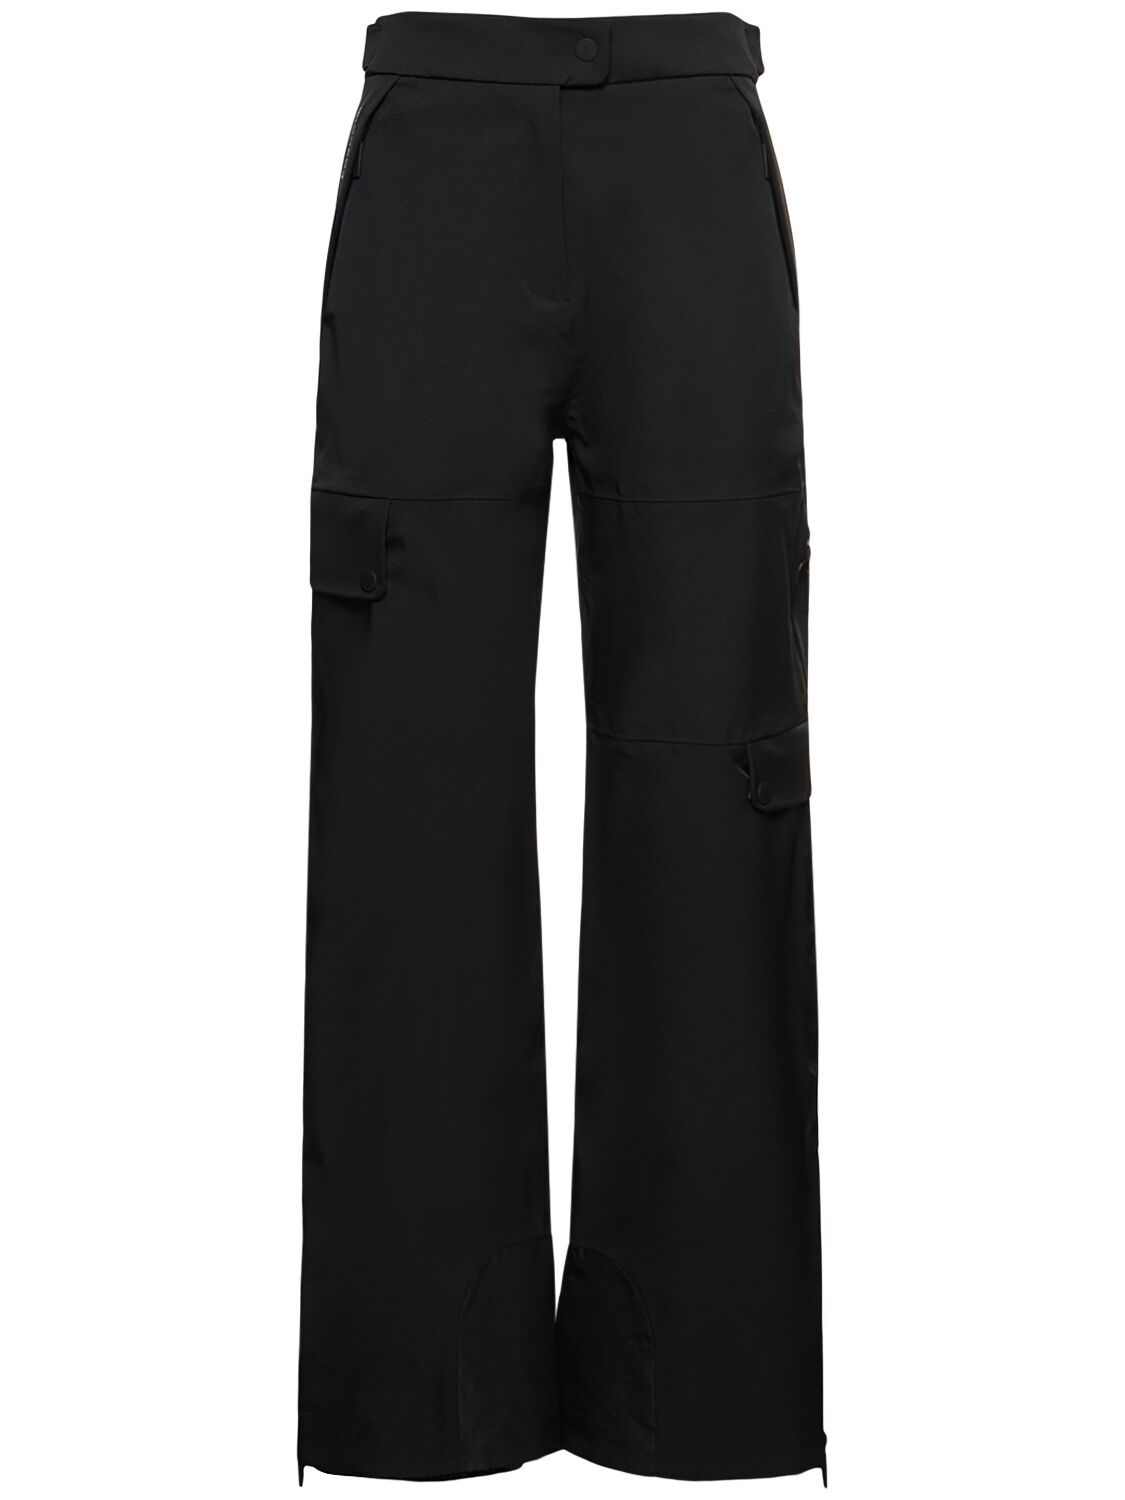 Cordova Zurs Stretch Tech Ski Trousers In Black